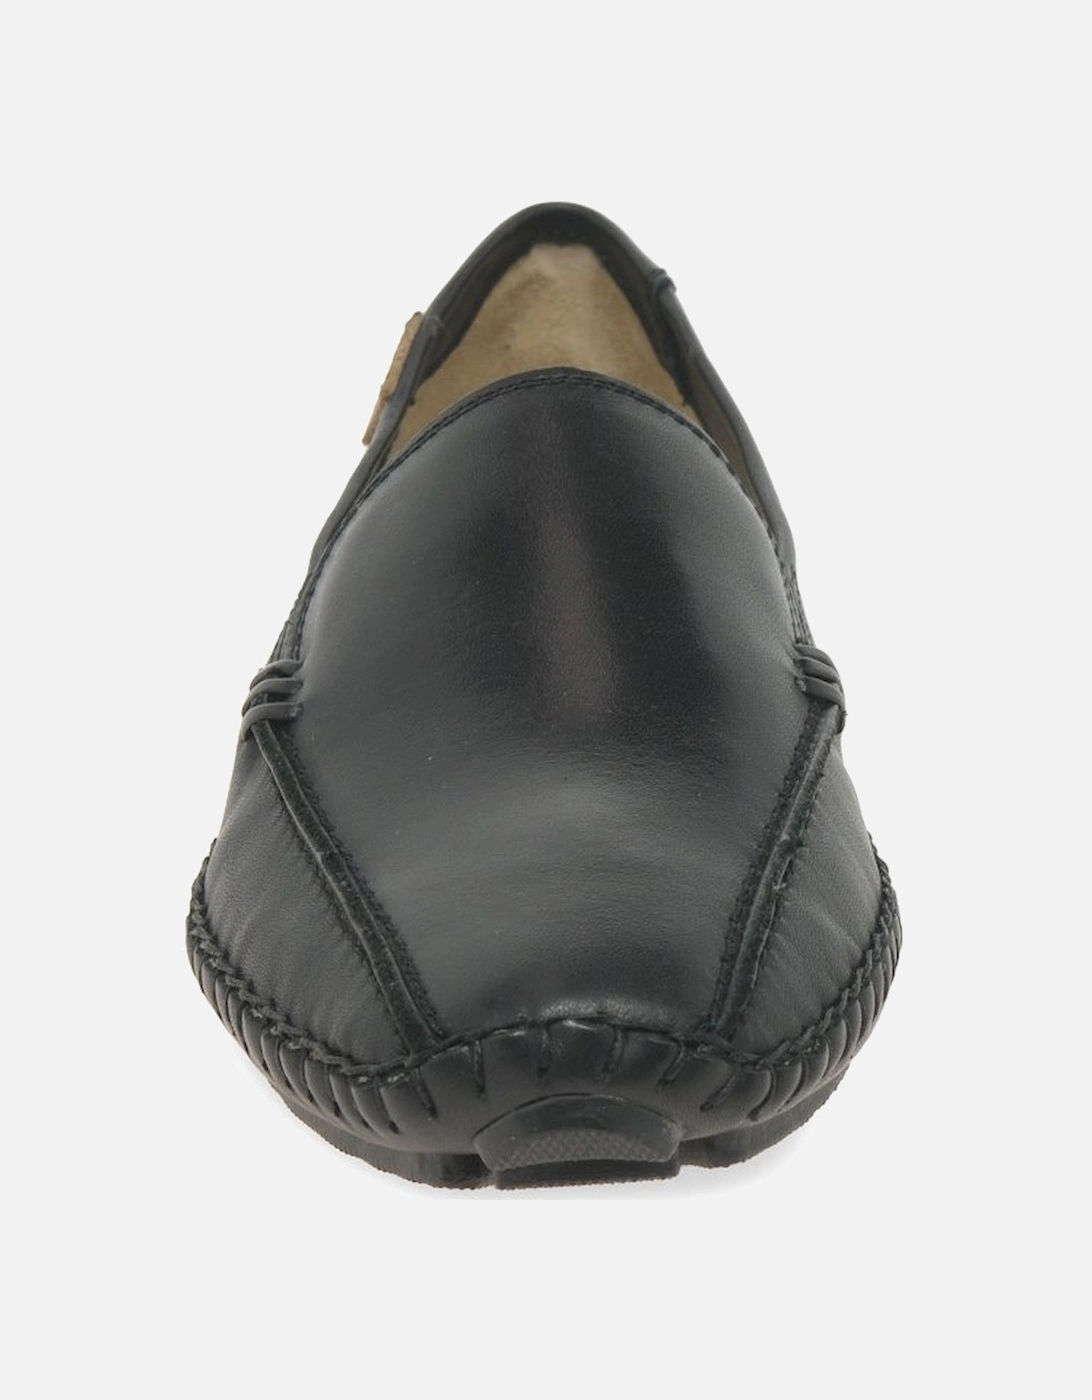 Slide Slip On Leather Shoes